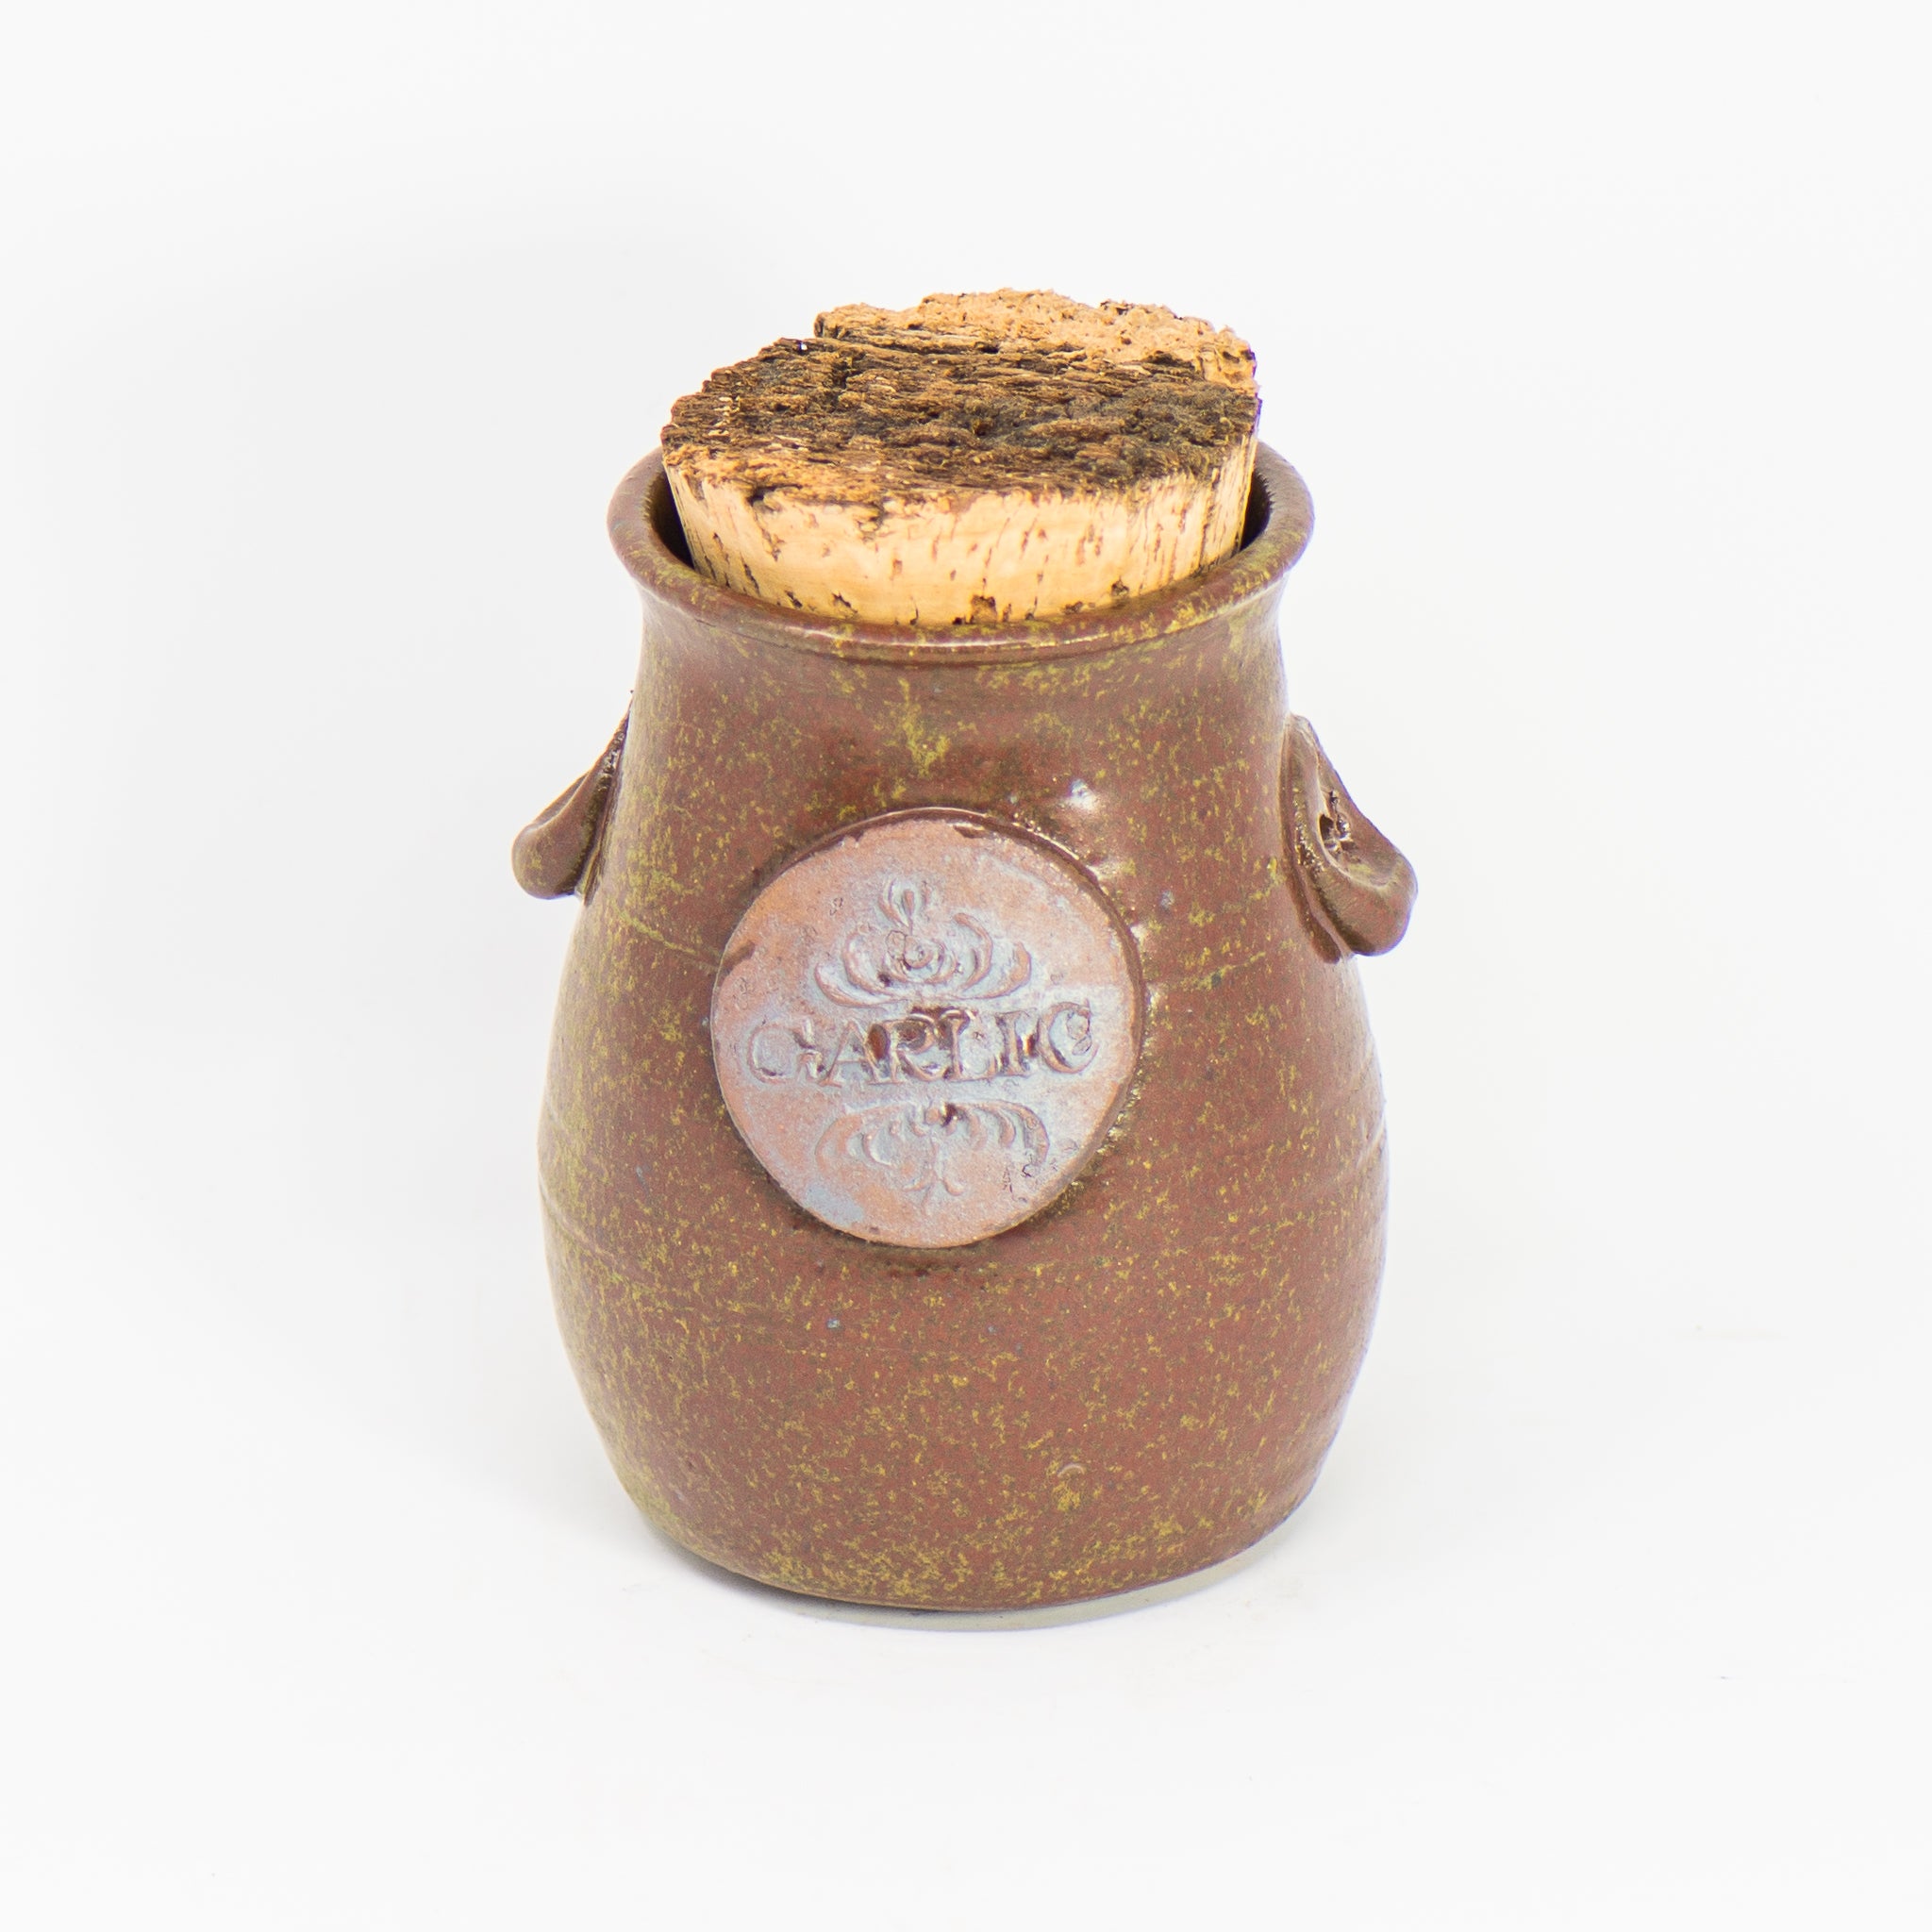 Garlic Cork Jar